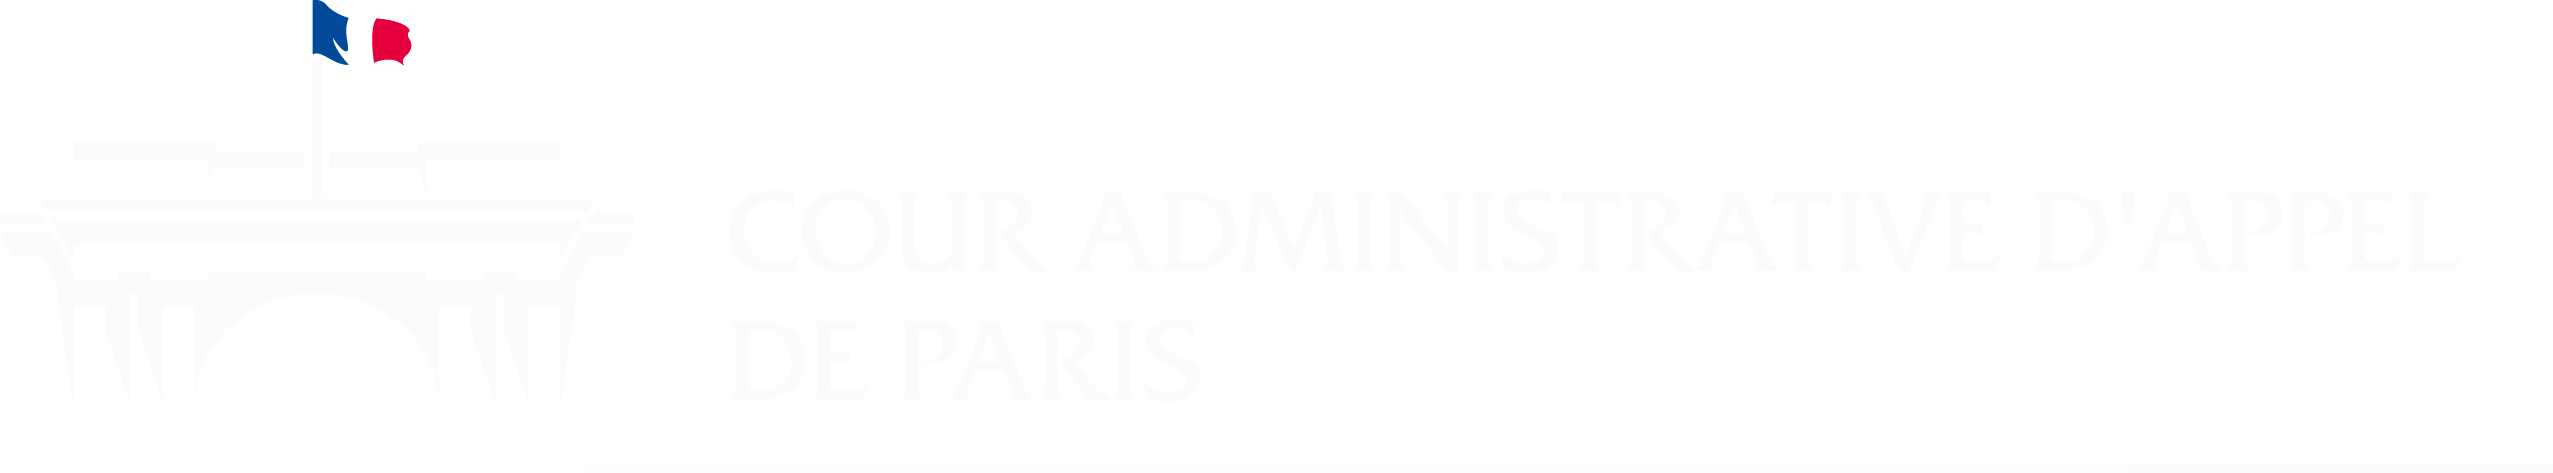 Cour administrative d'appel de Paris - Retour à l'accueil